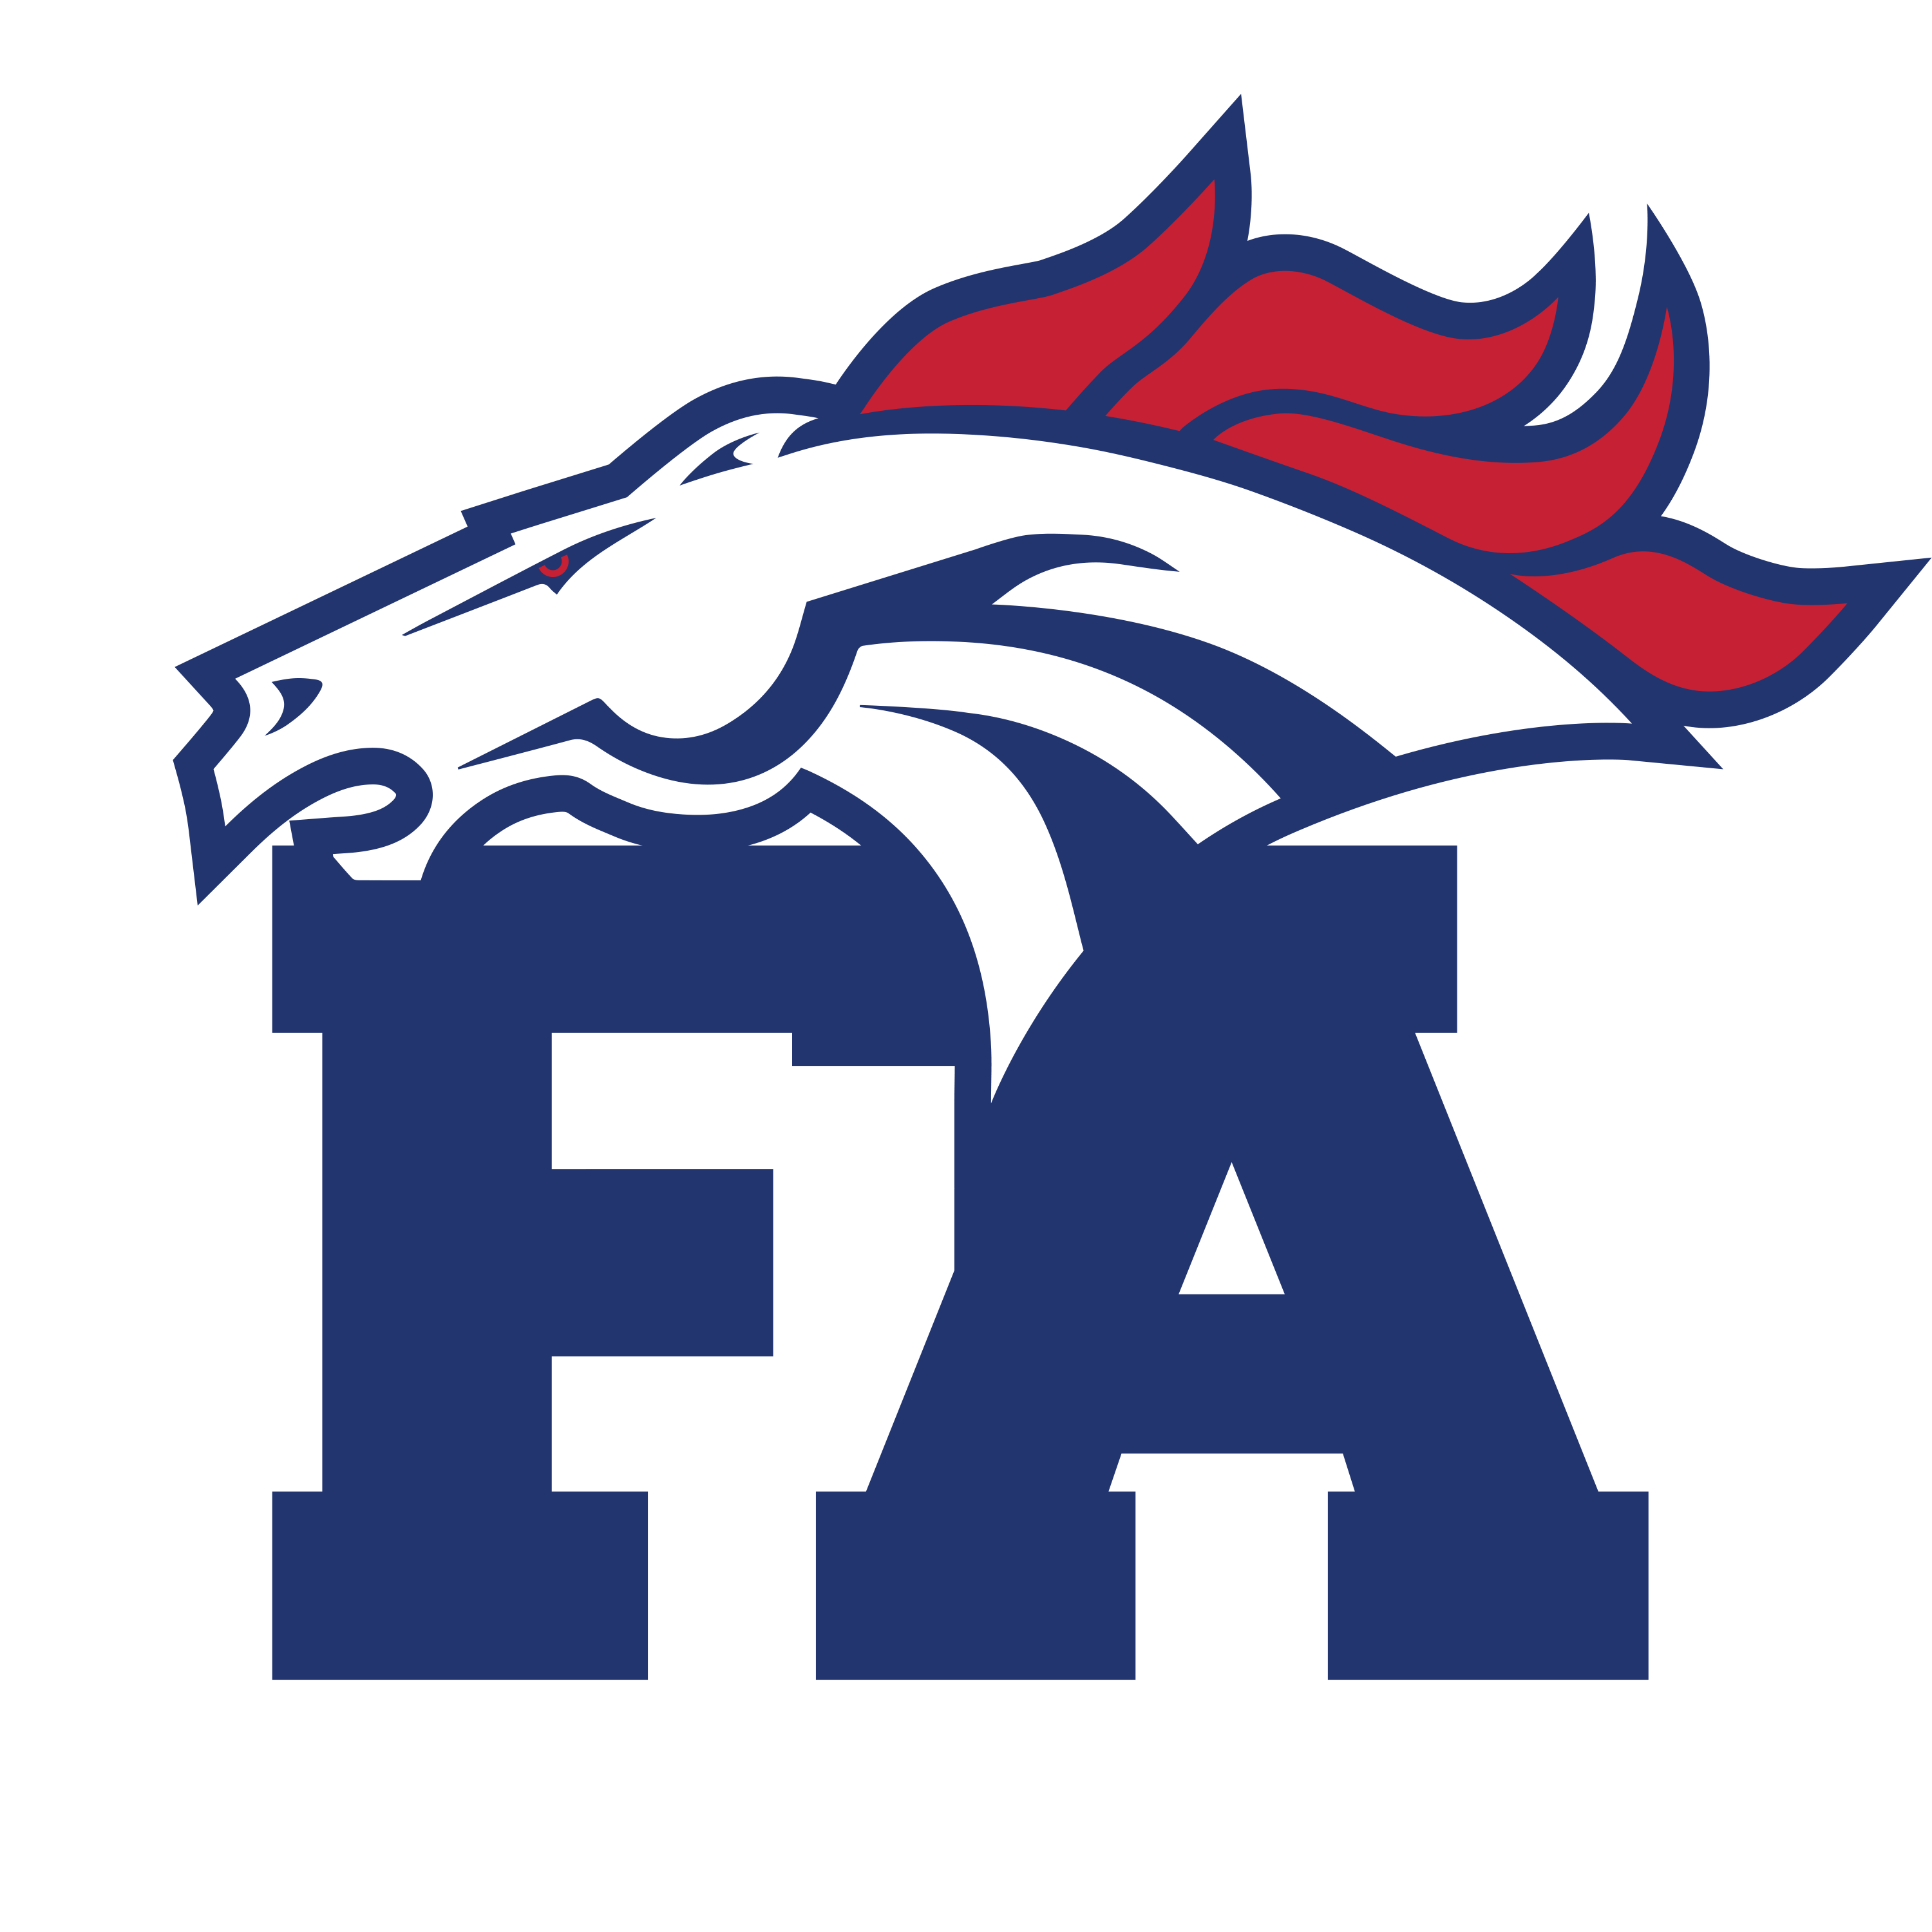 FA Logo - Fellowship Academy Athletics logo makeover | Type A Design